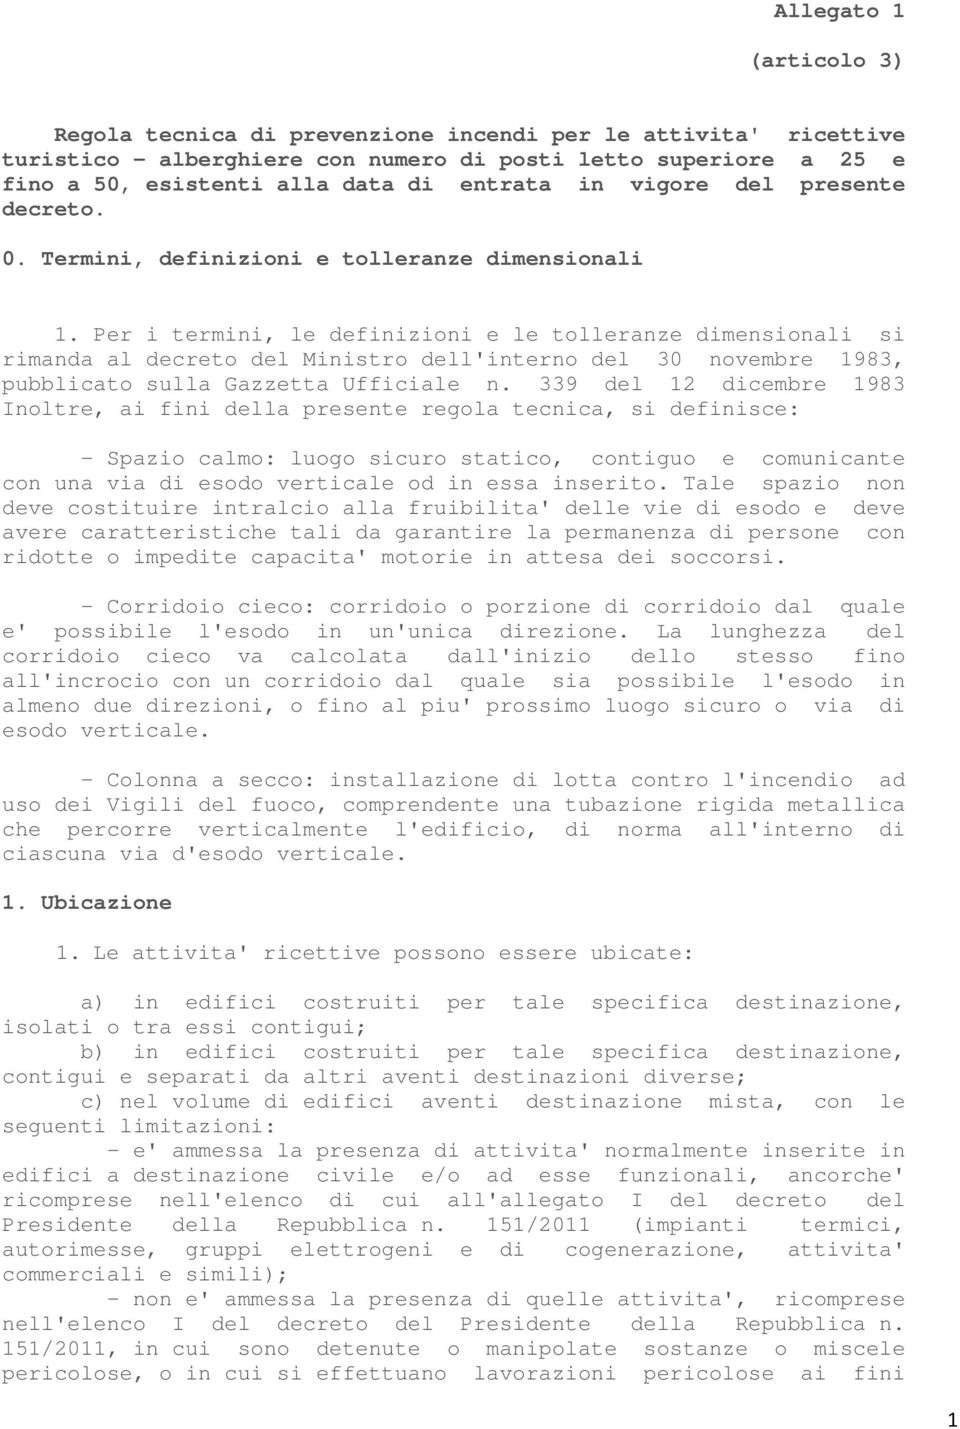 Per i termini, le definizioni e le tolleranze dimensionali si rimanda al decreto del Ministro dell'interno del 30 novembre 1983, pubblicato sulla Gazzetta Ufficiale n.